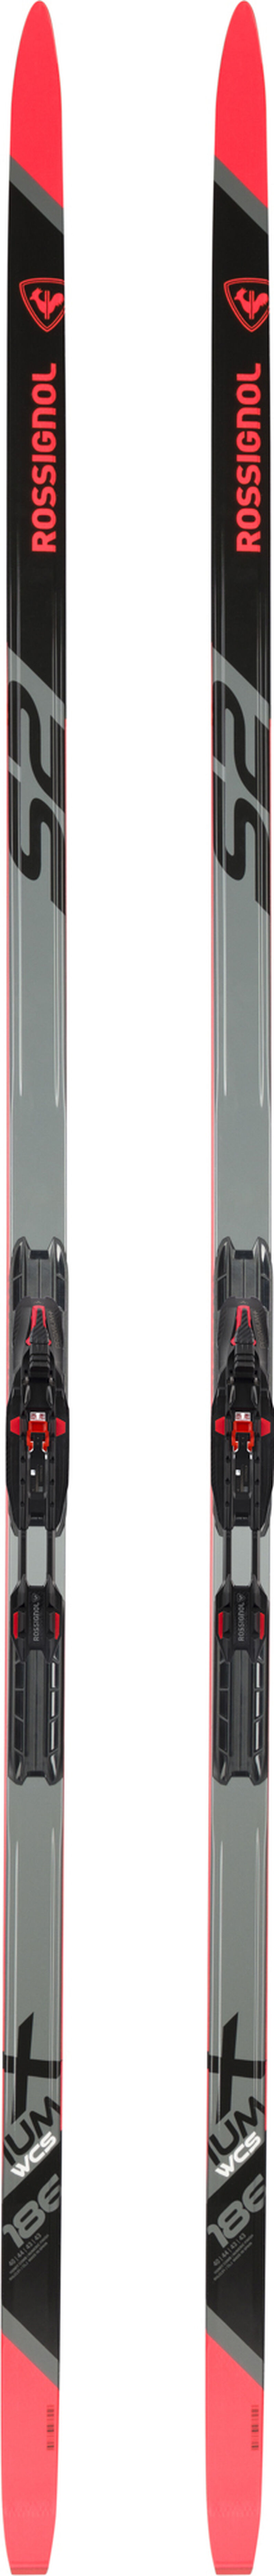 Unisex Nordic Racing Skis X-Ium Skating Wcs-S2 MEDIUM